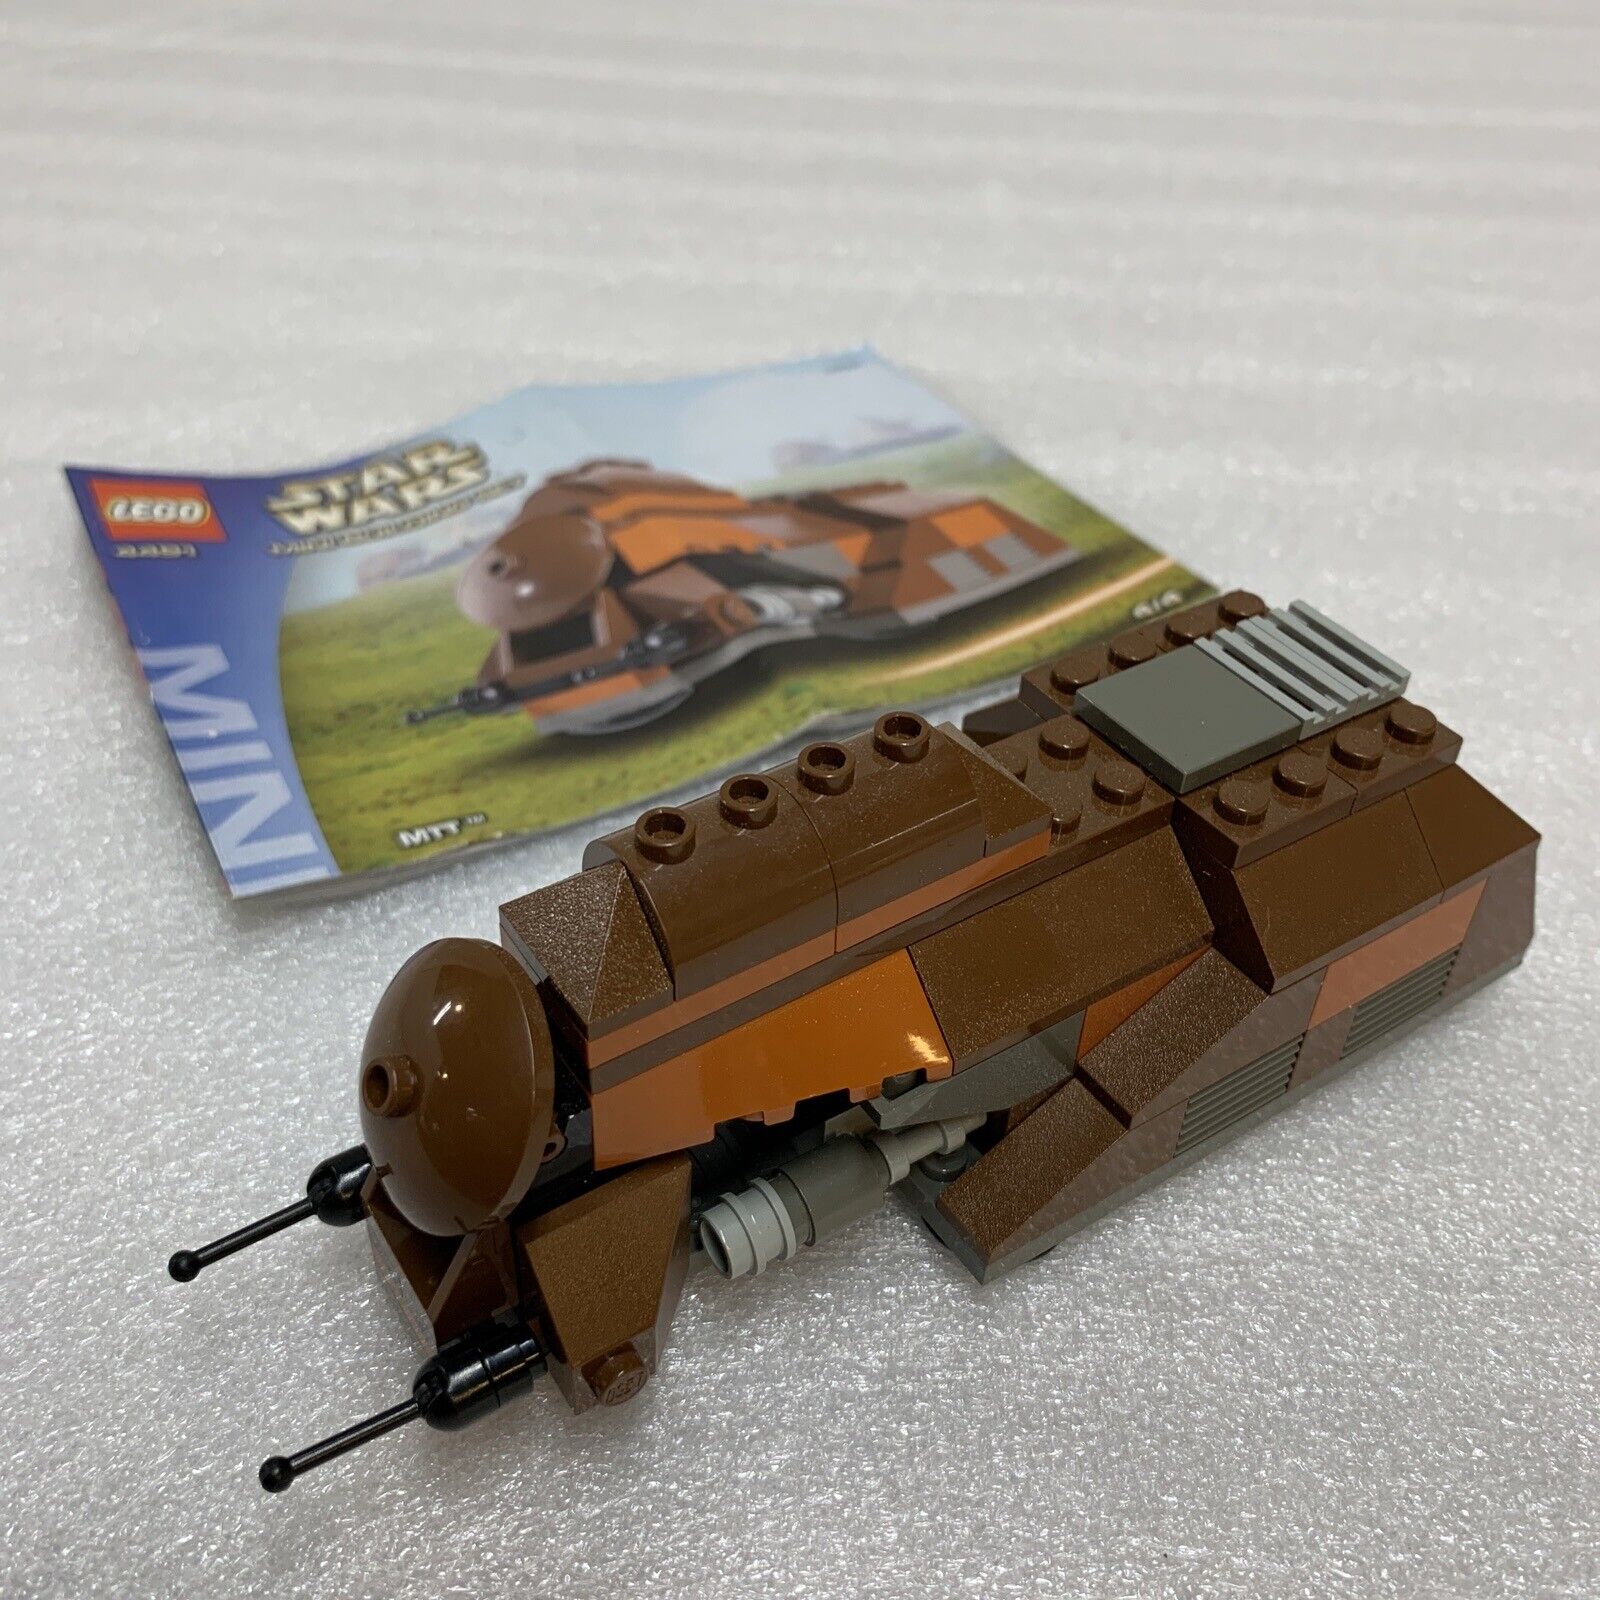 Lego Star Wars Clone Wars - Rare Mini Building Set From 2003 - 4491 MTT